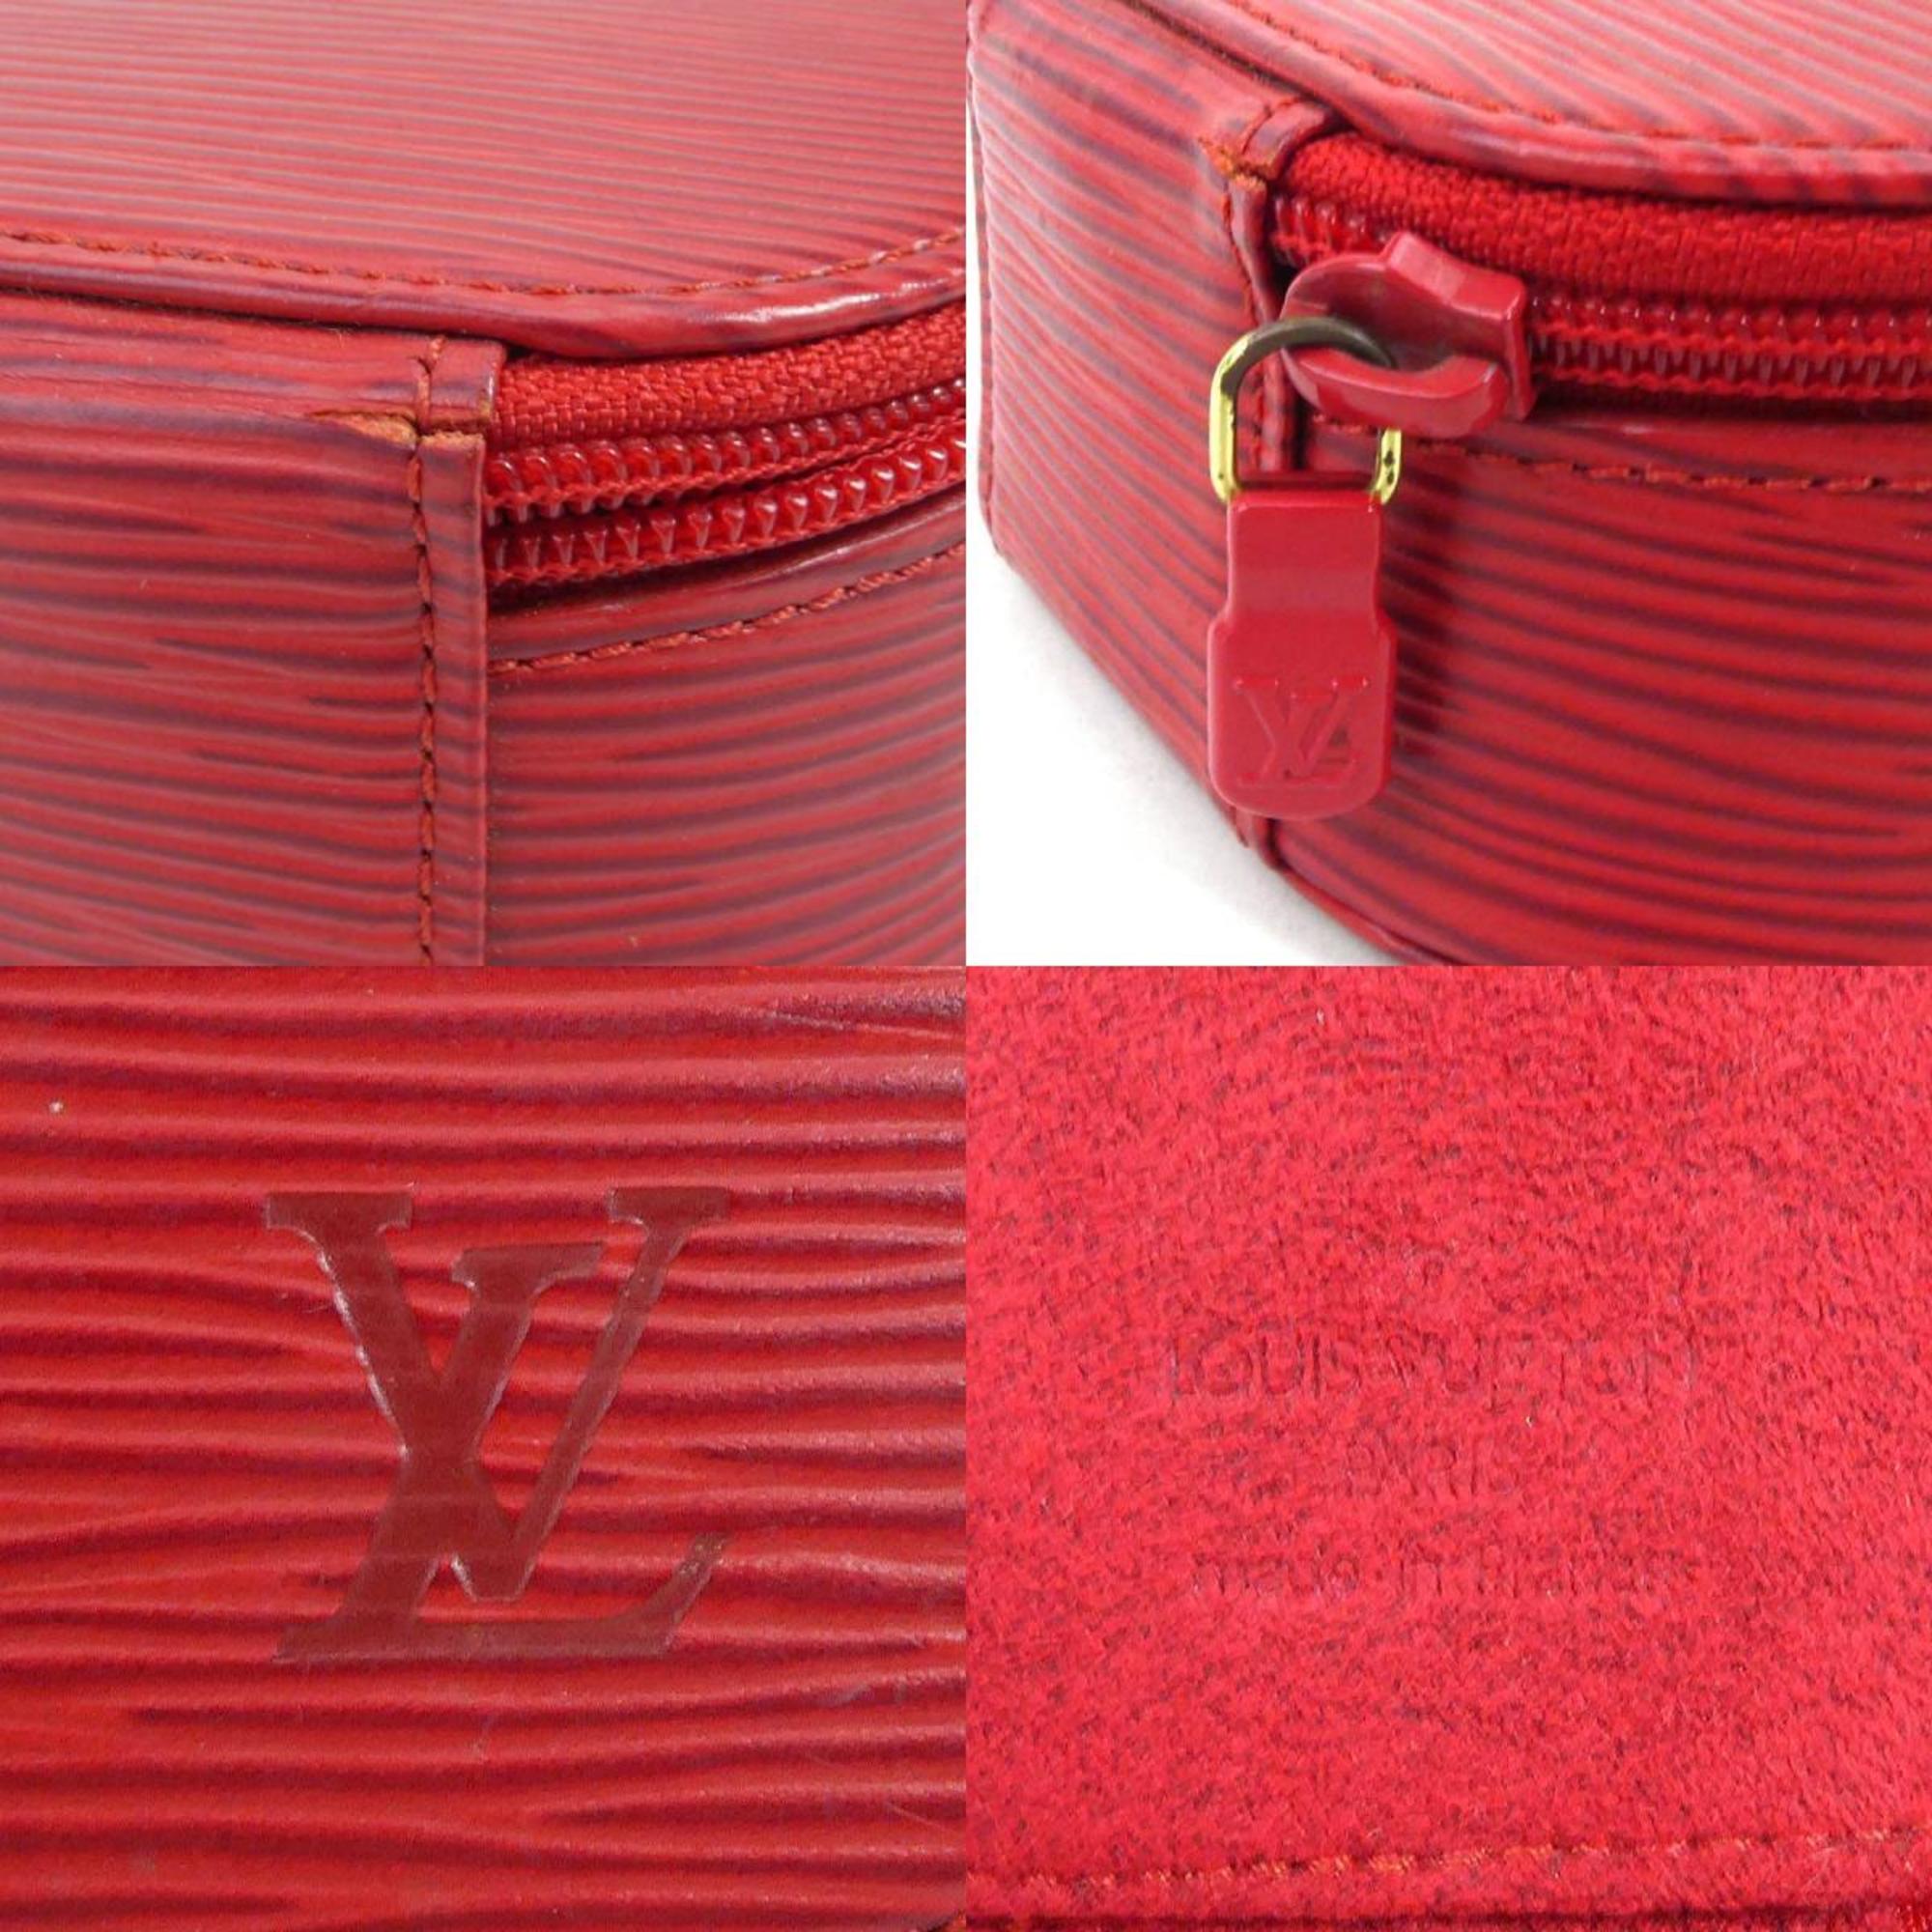 Louis Vuitton LOUIS VUITTON Accessory Pouch Jewelry Case Epi Ecran Bijou Leather Red Unisex M48217 e55916a